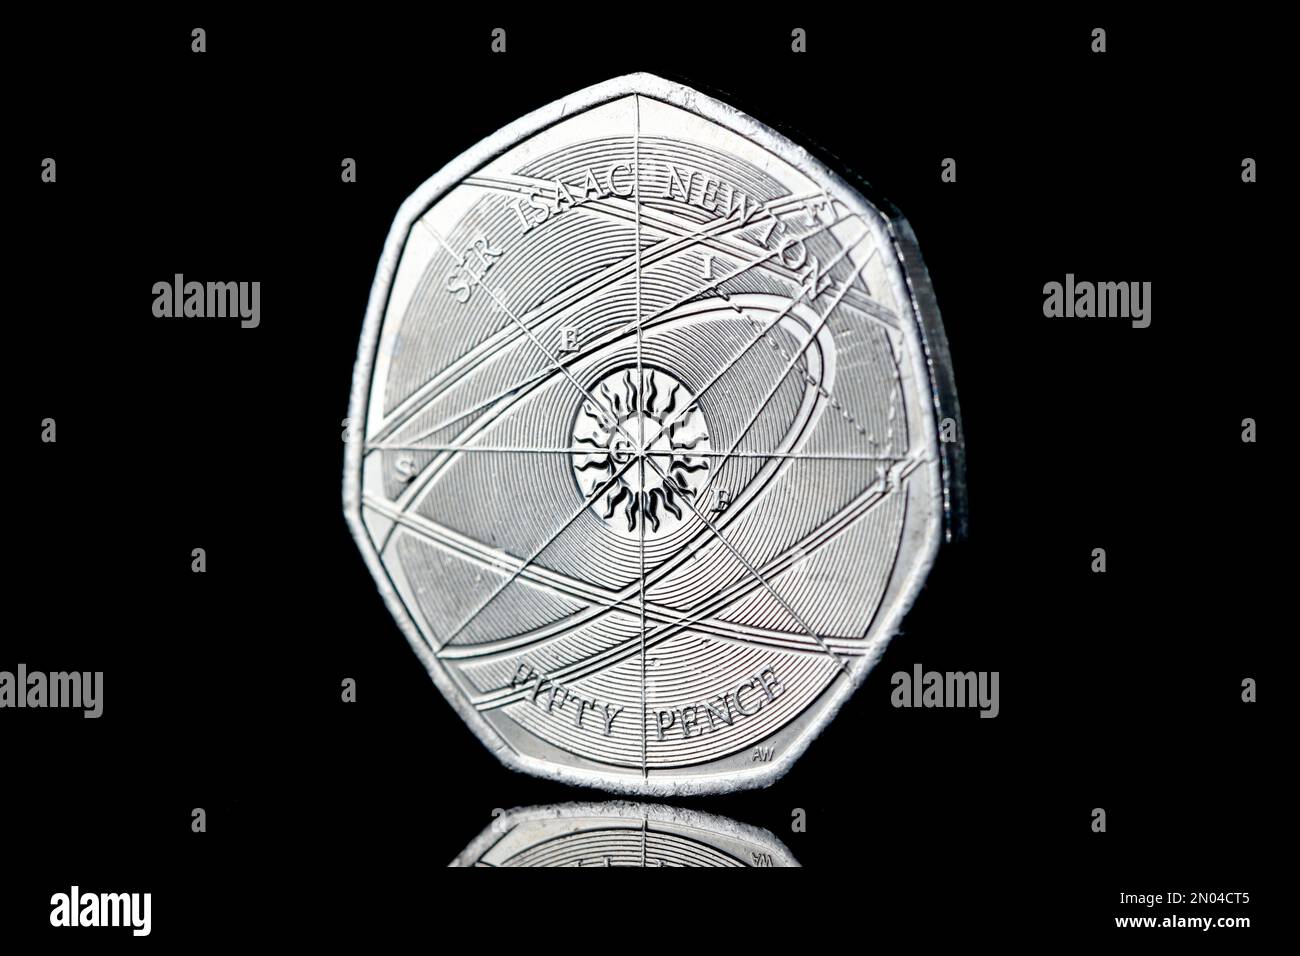 Eine 50p-Euro-Münze wurde ausgegeben, um den Errungenschaften von Sir Isaac Newton und seinem Vermächtnis zu gedenken. Ausgestellt im Jahr 2017 Stockfoto